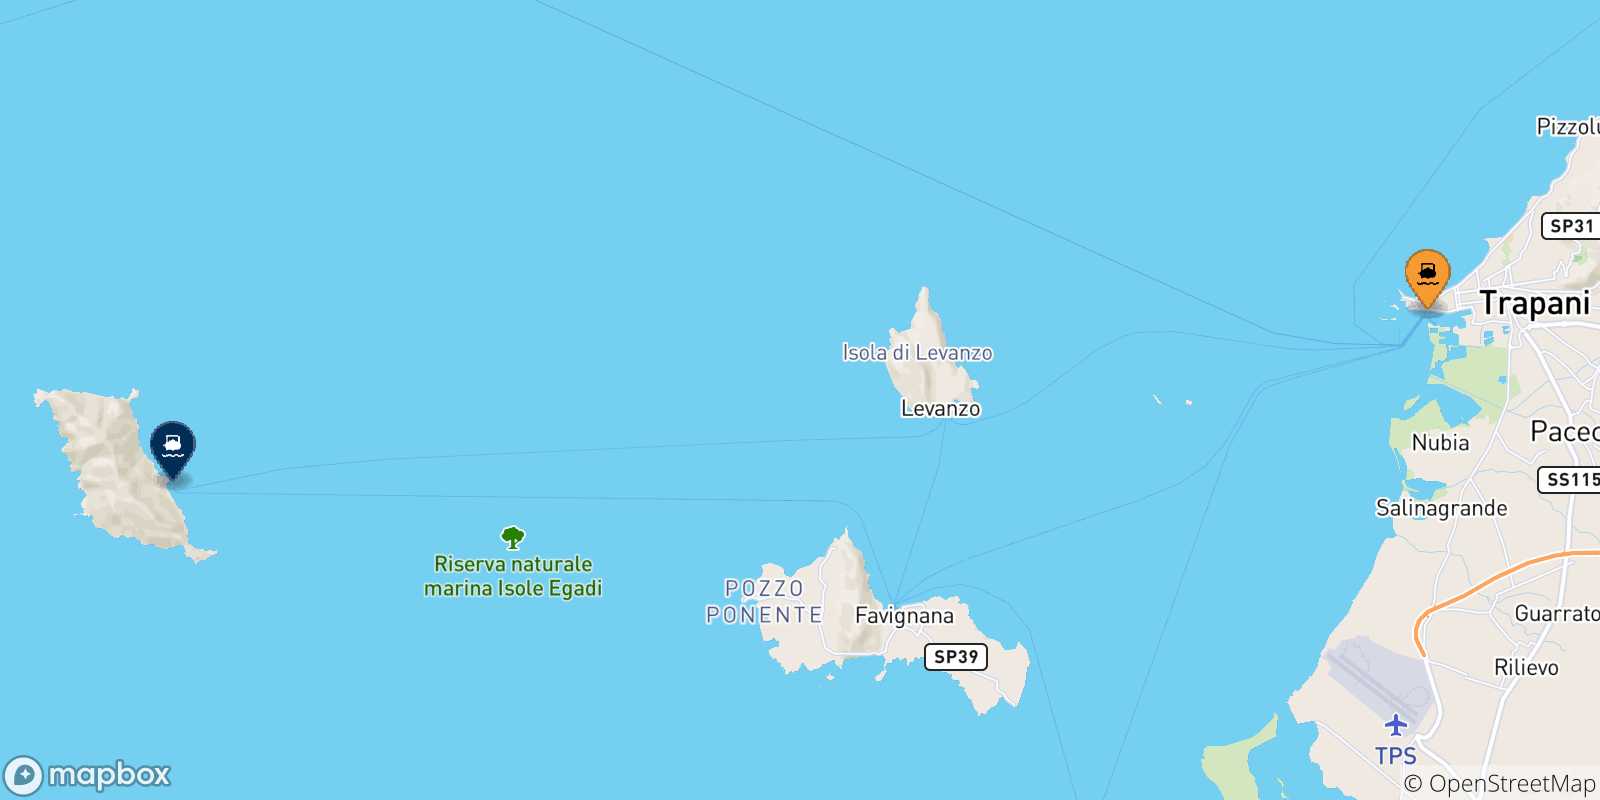 Mappa delle possibili rotte tra la Sicilia e Marettimo